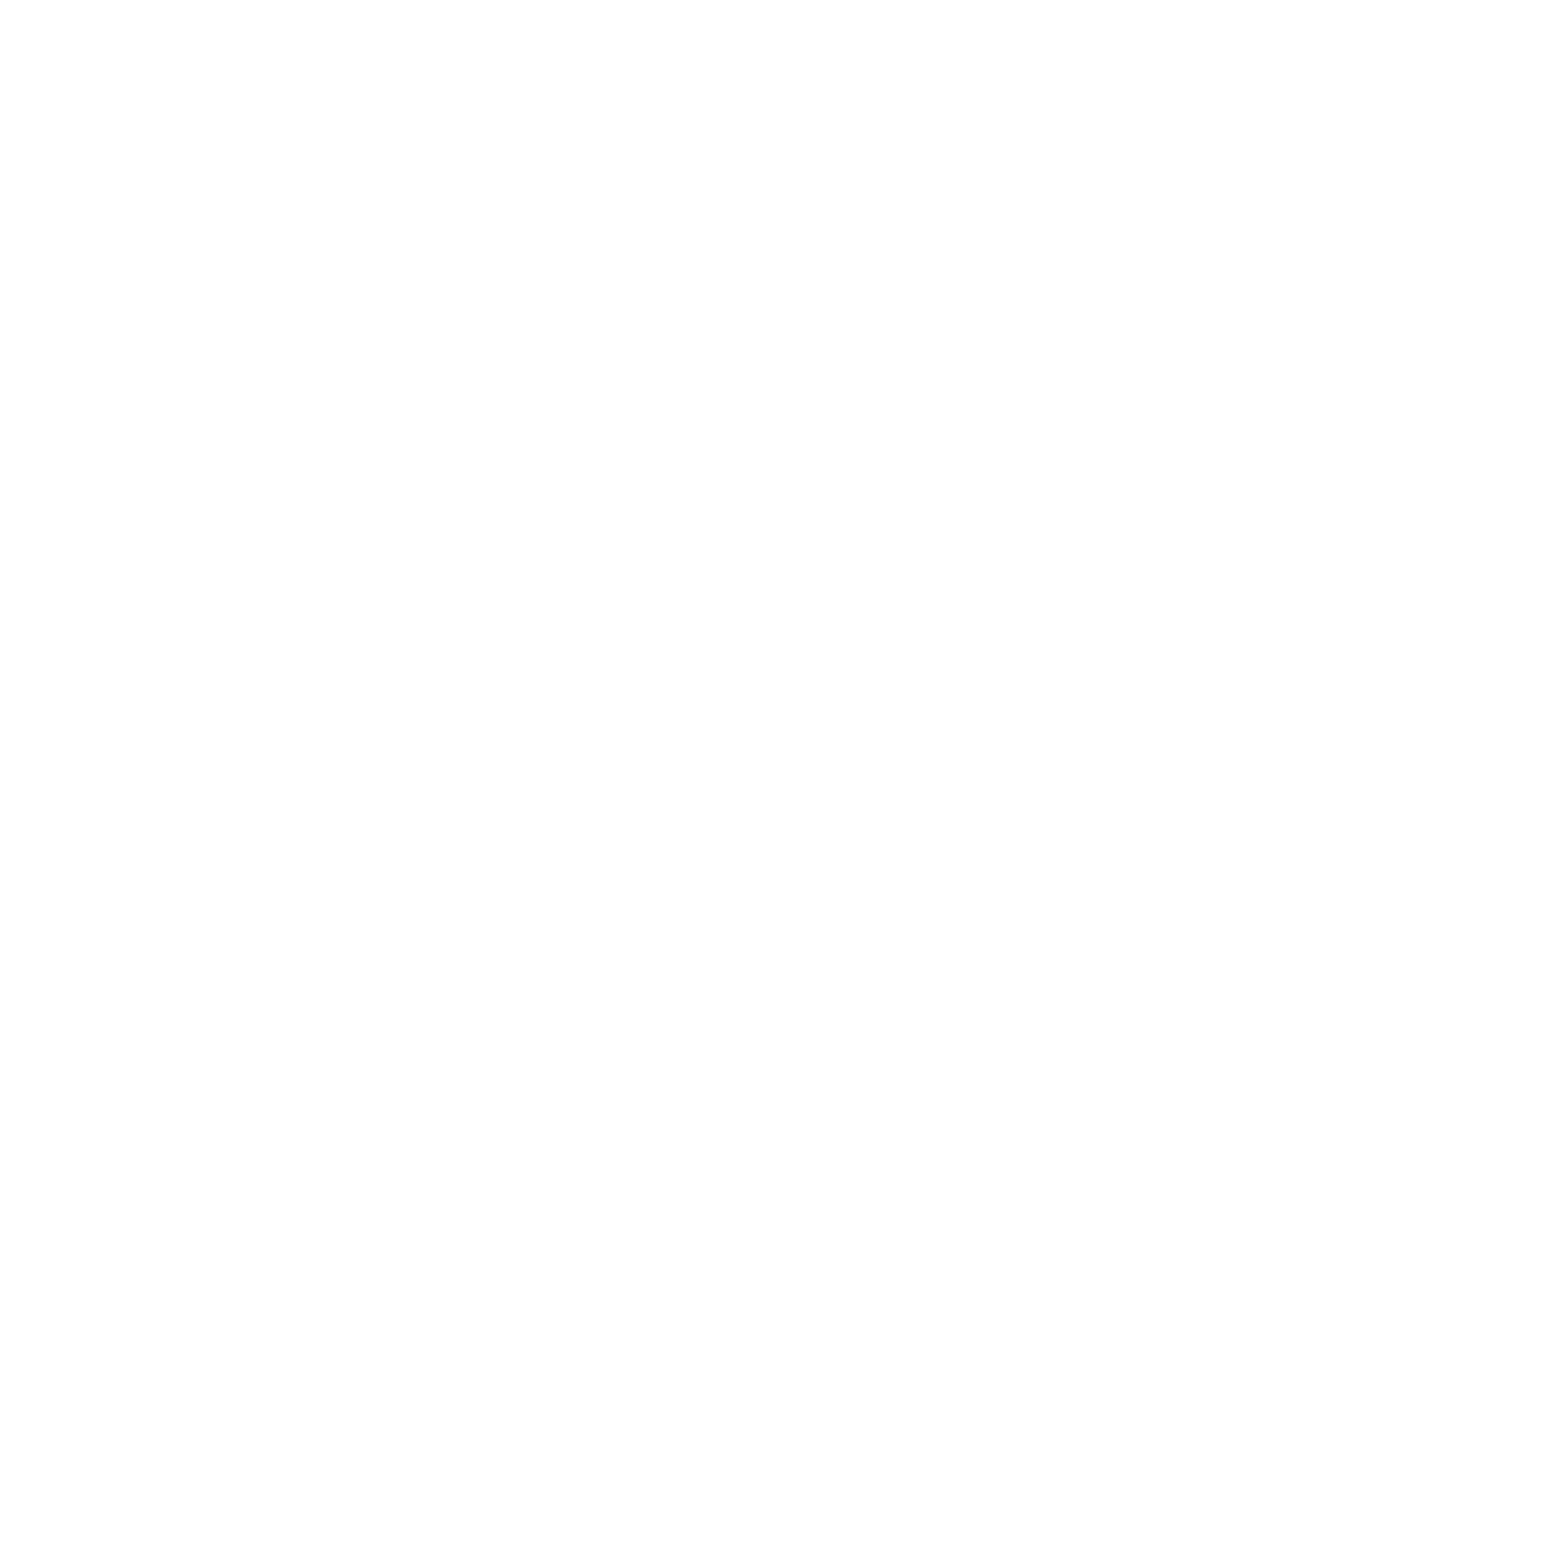 Northann Corp logo pour fonds sombres (PNG transparent)